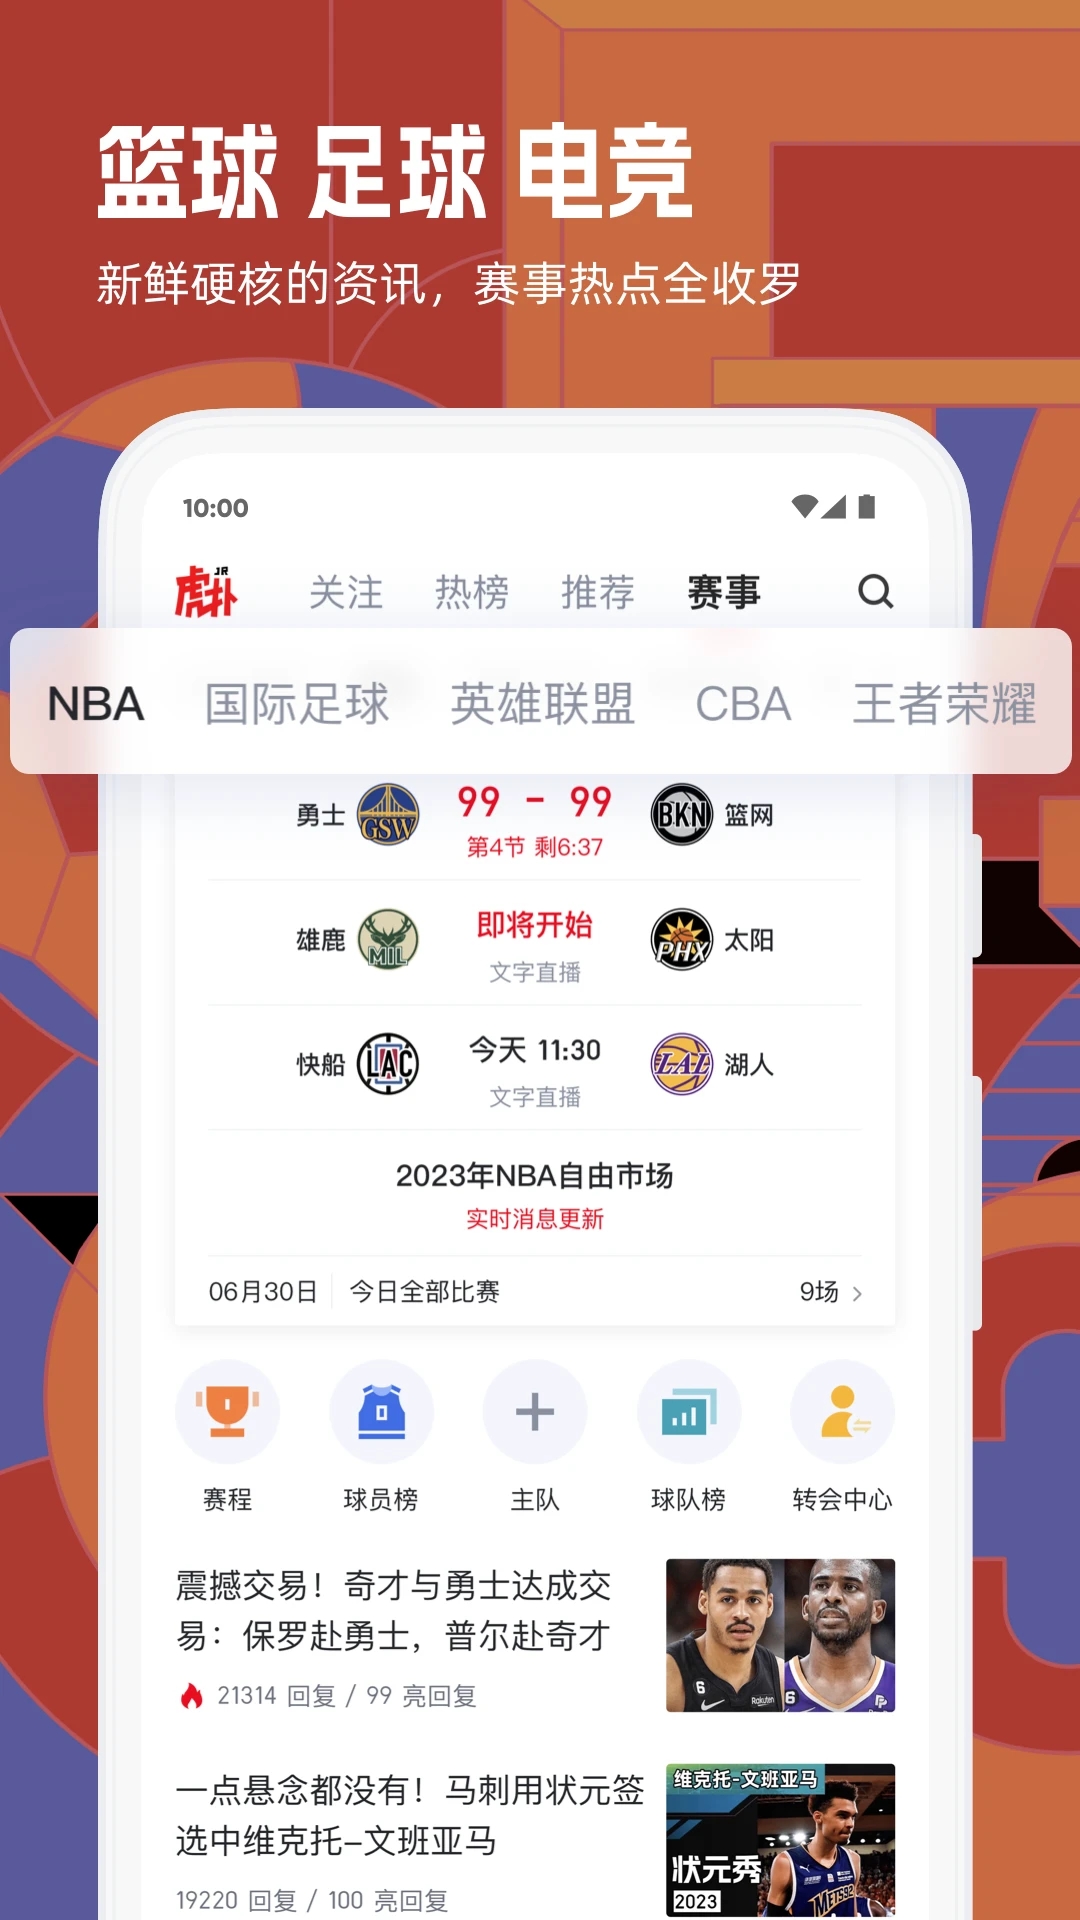 虎扑篮球nba手机版下载安装-虎扑篮球nba可以看NBA每场比赛的比分数据和神评论